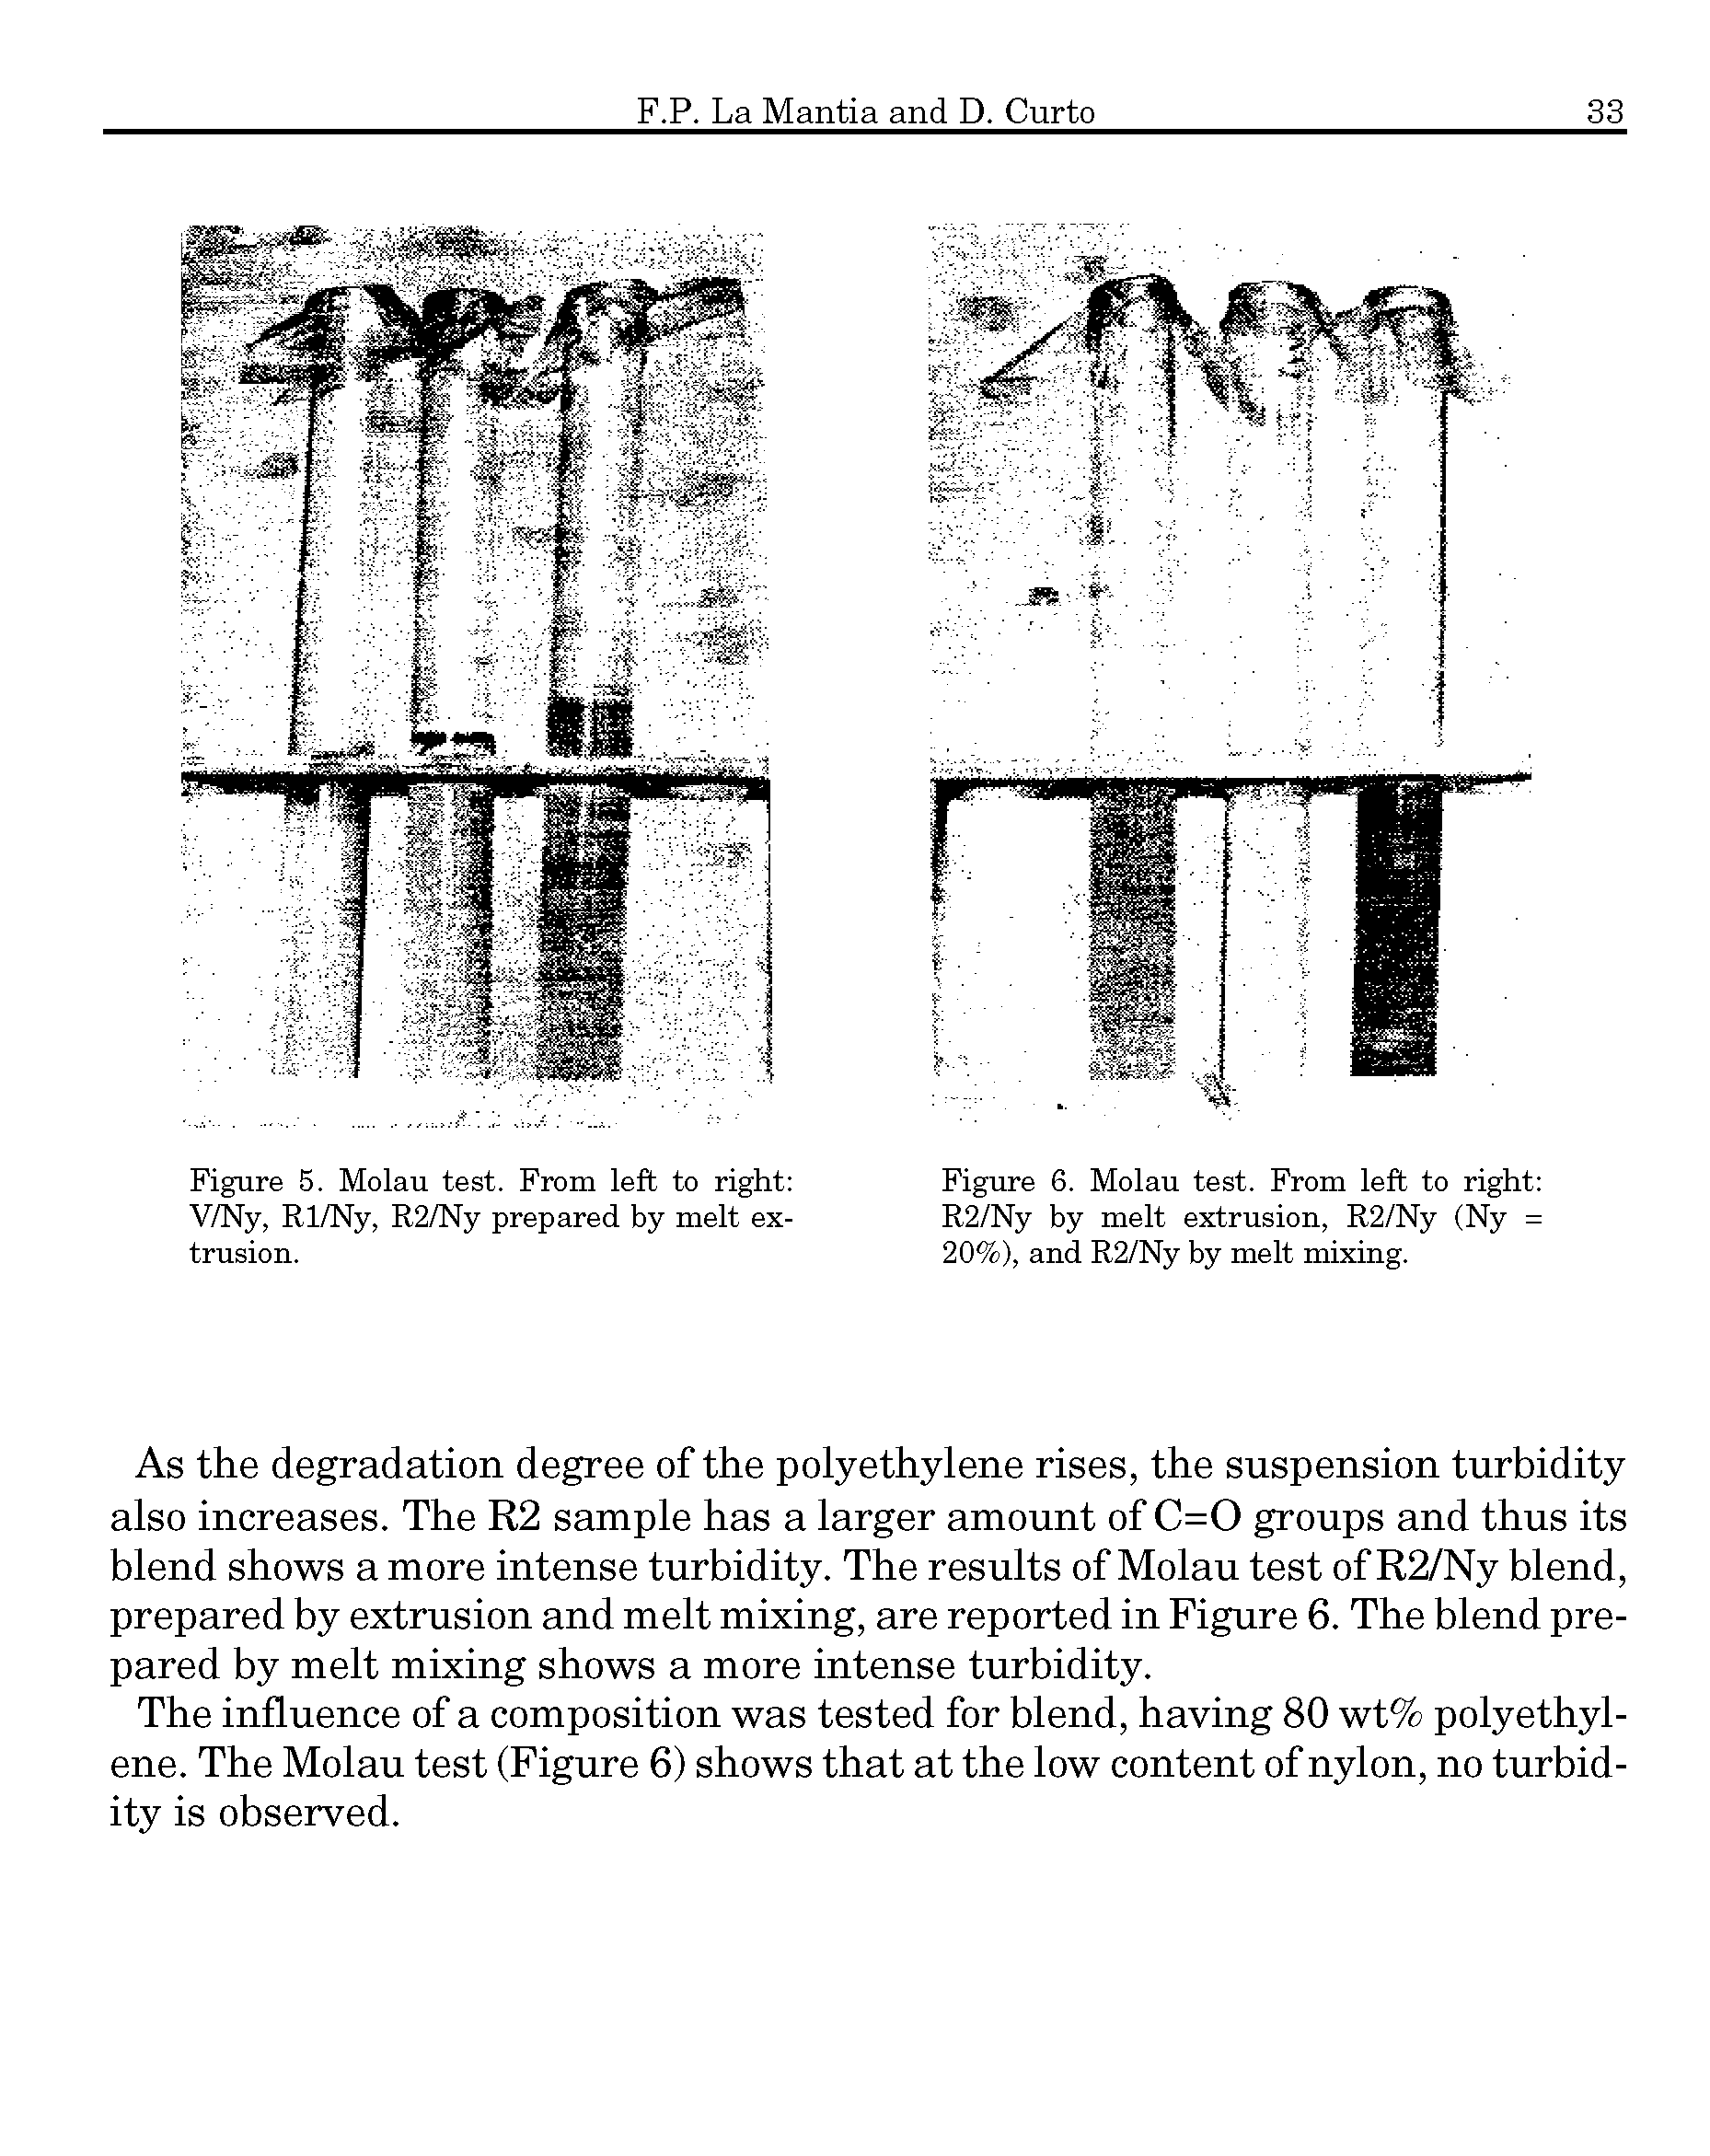 Figure 5. Molau test. From left to right V/Ny, Rl/Ny, R2/Ny prepared by melt extrusion.